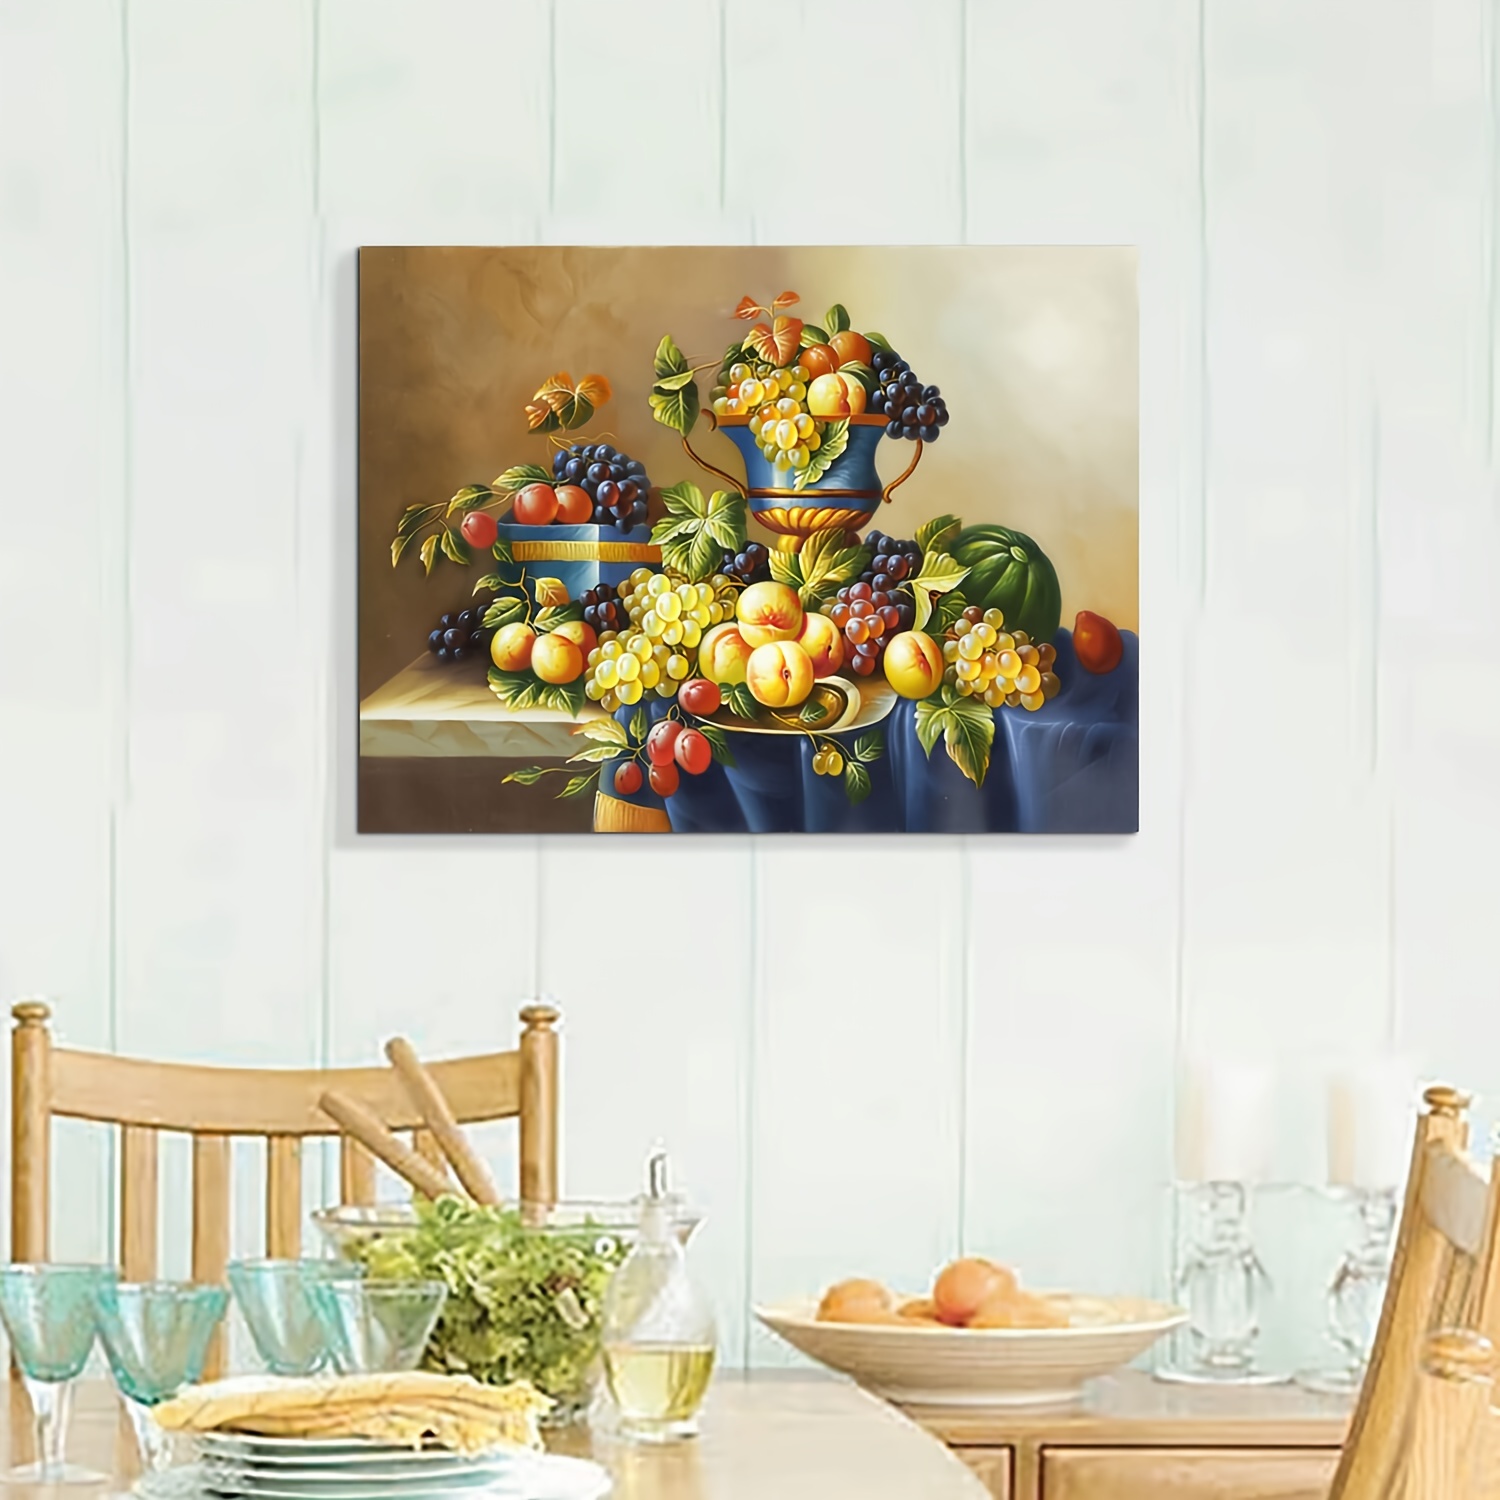  Lienzo decorativo para cocina, pinturas de café y vino tinto,  cuadros vintage de granja, pan y frutas, impresiones artísticas enmarcadas  para comedor, bar, decoración de pared del hogar, paneles de 12 